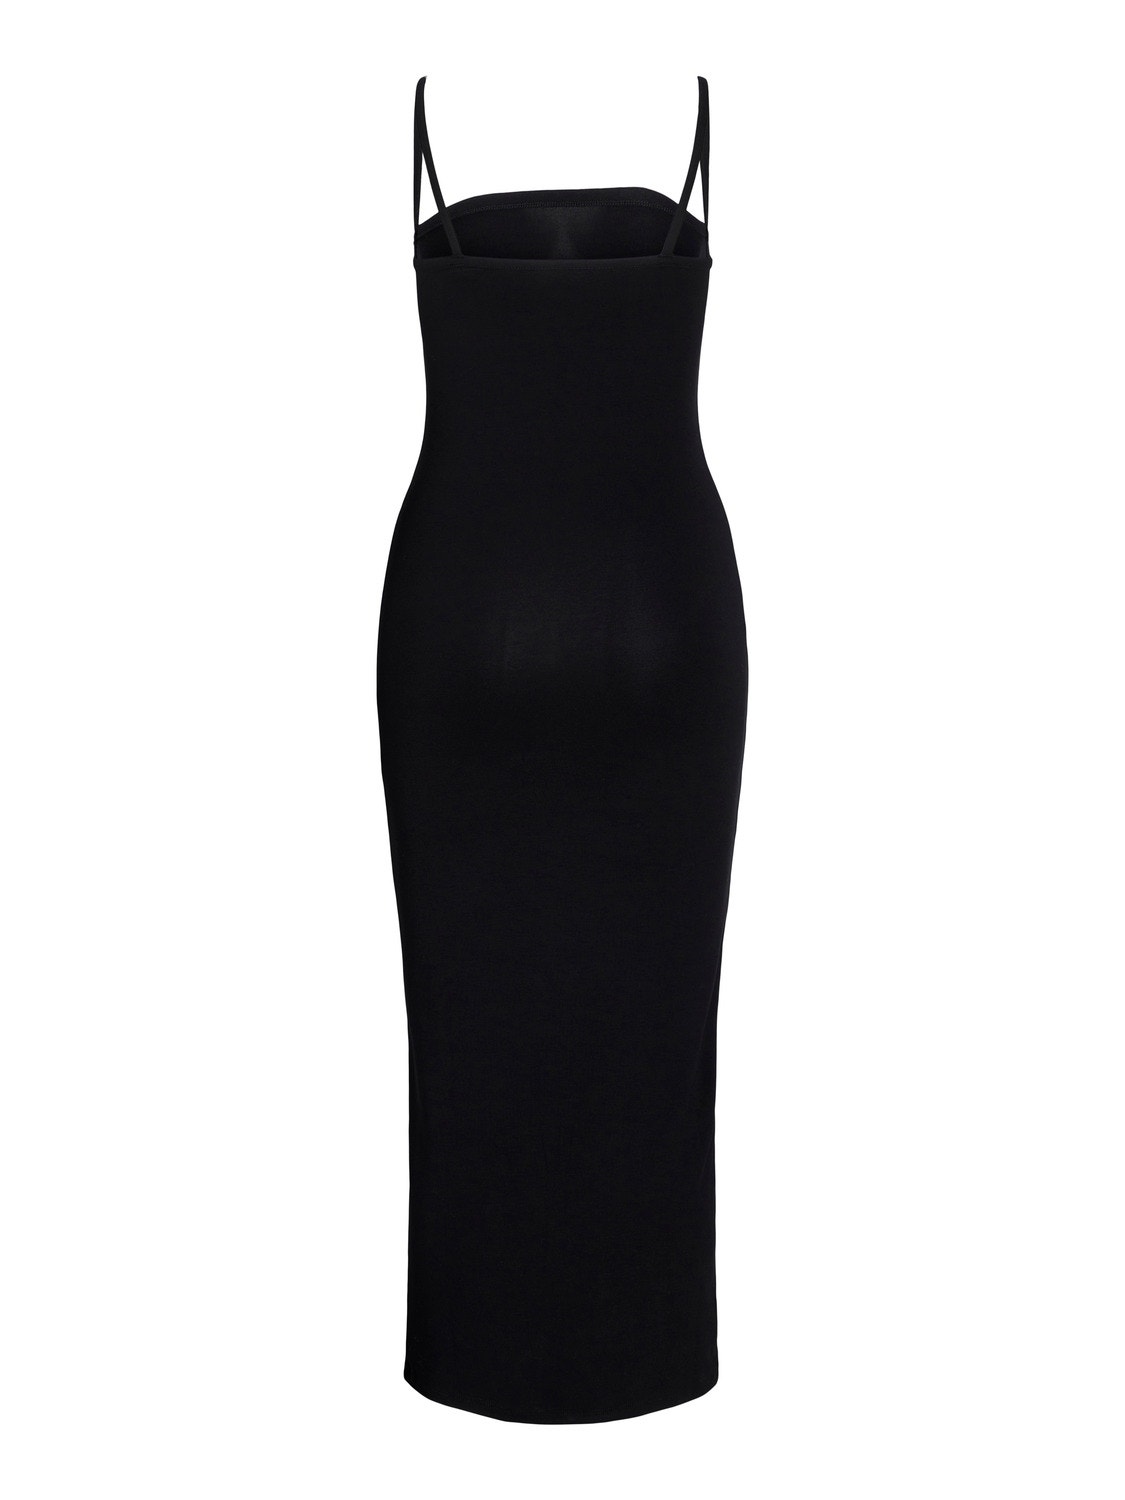 JJXX JXMARISOL Dress -Black - 12252302